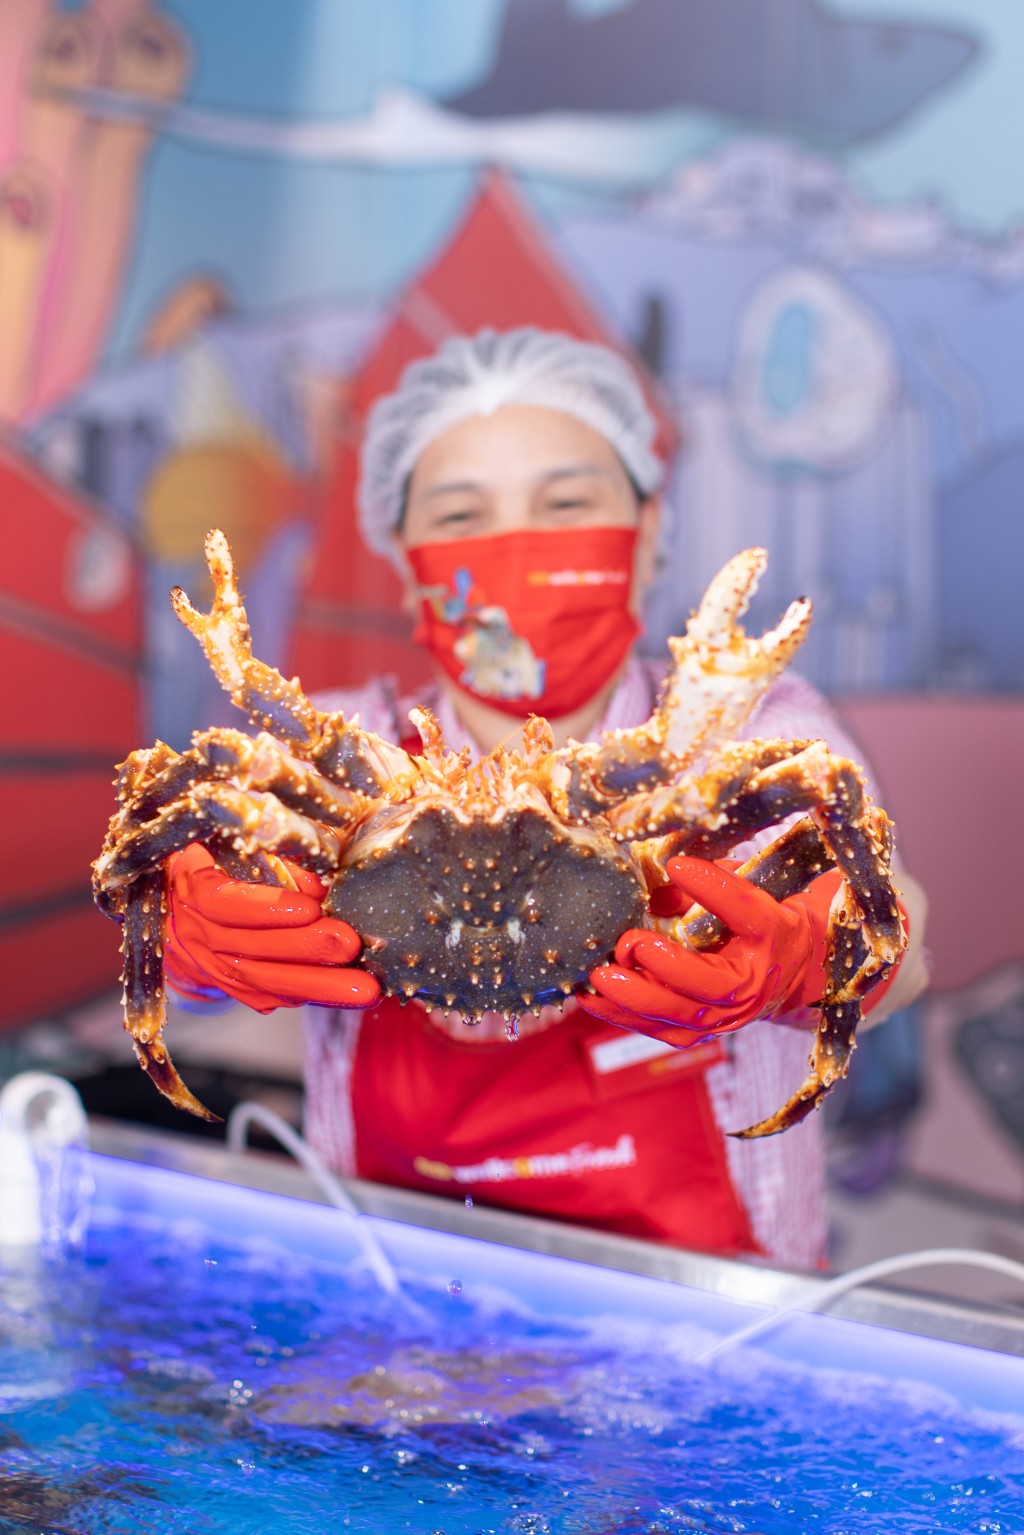 阿拉斯加鲜活皇帝蟹。惠康图片